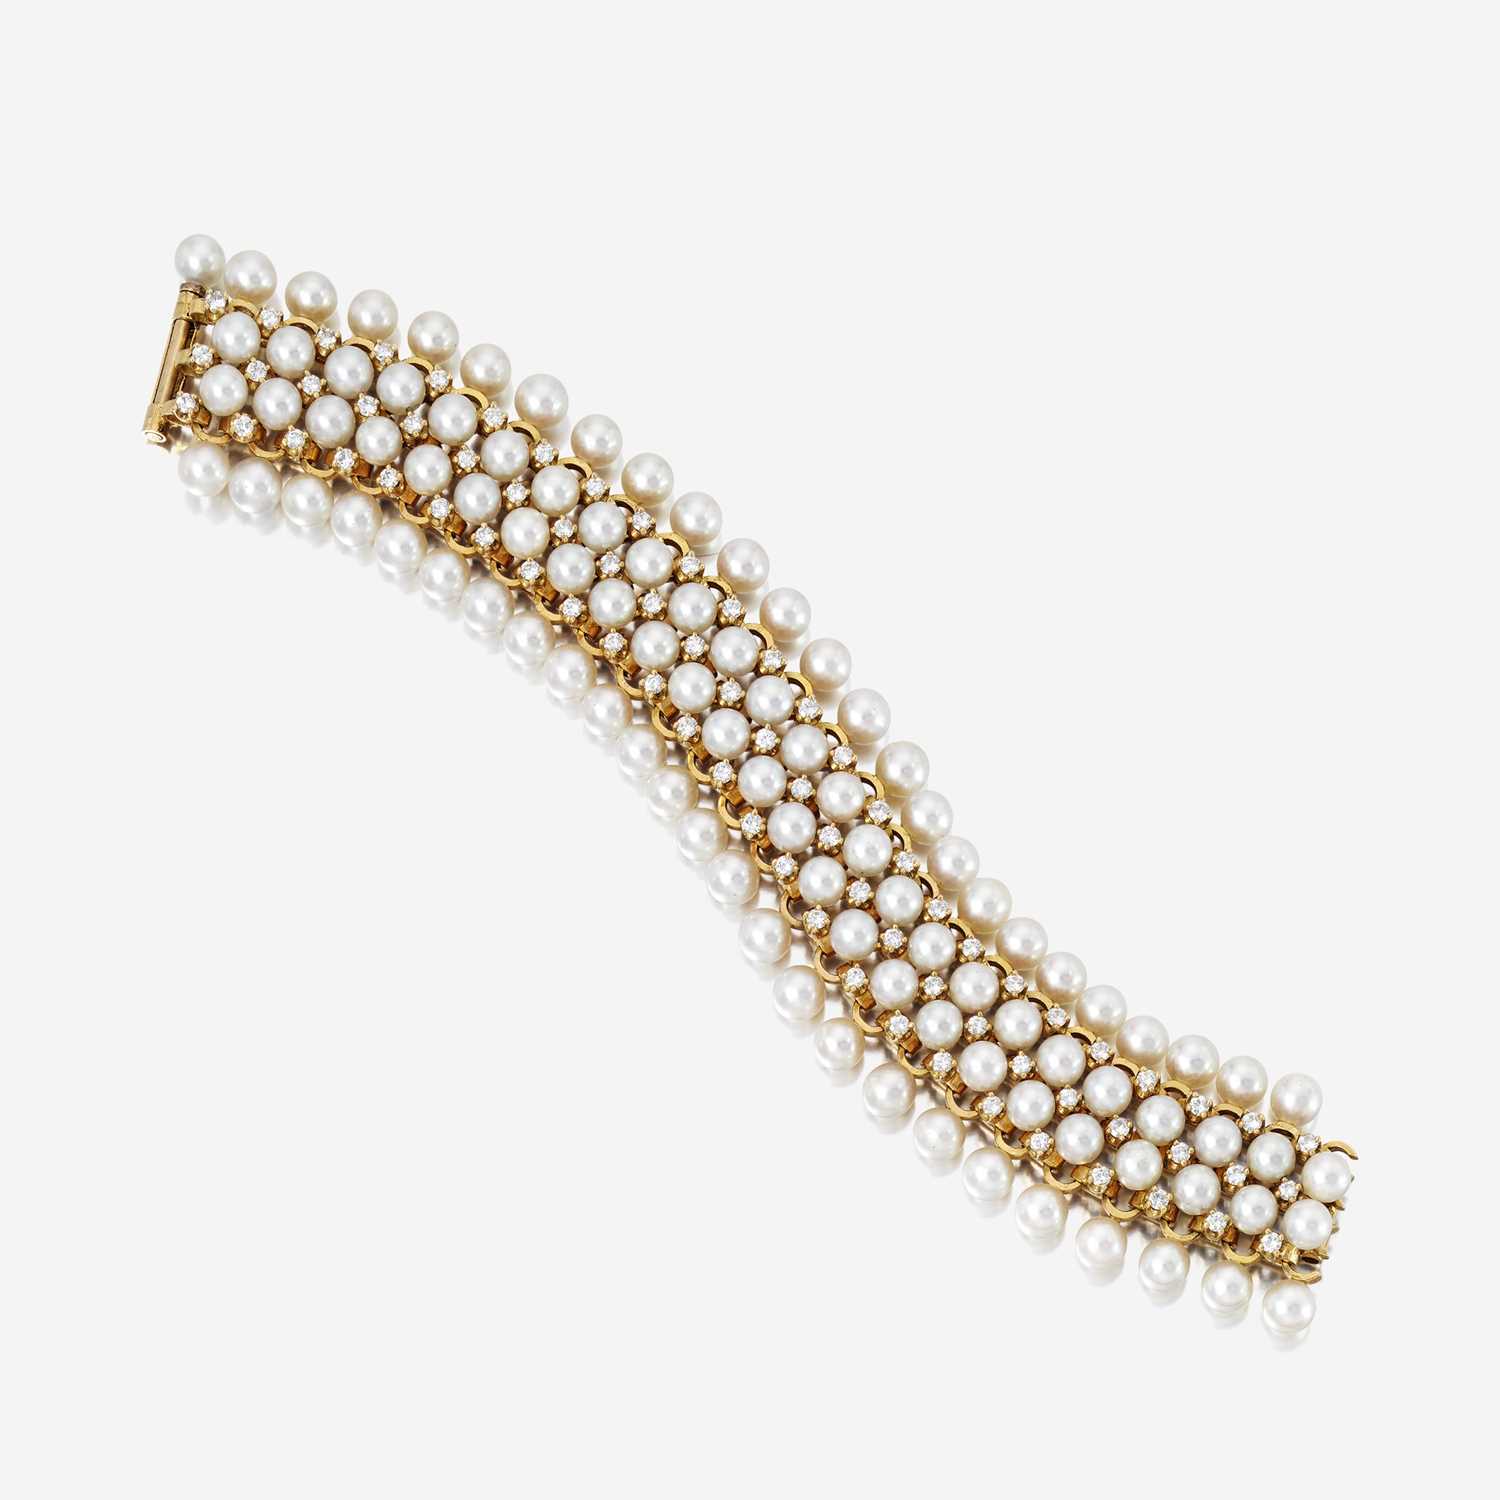 Lot 56 - An eighteen karat gold, cultured pearl, and diamond bracelet, Schlumberger